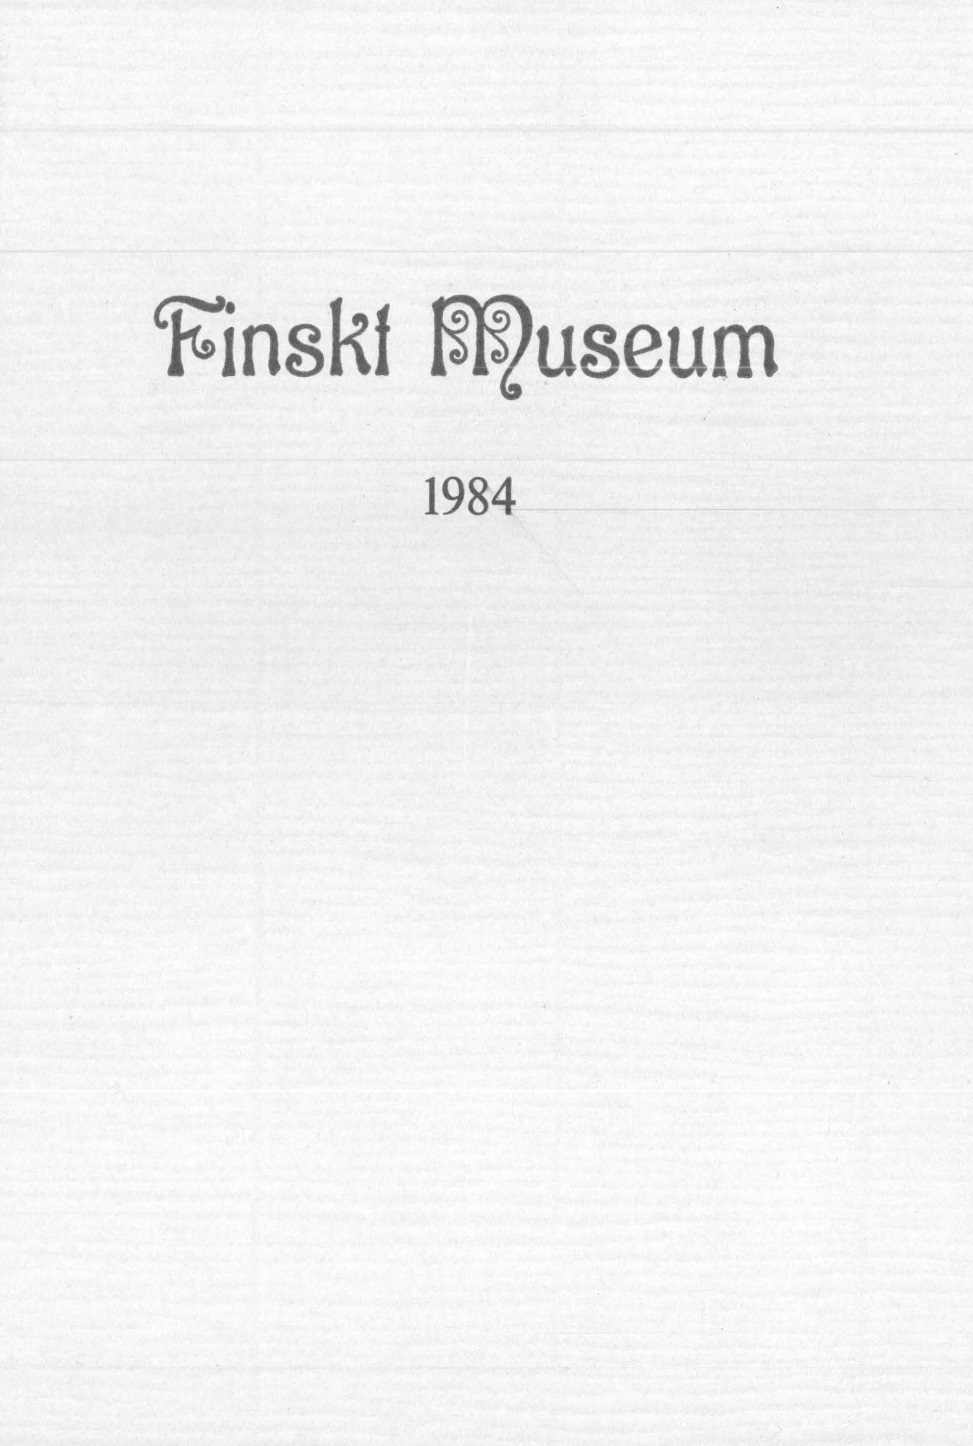 					Visa Vol 91: Finskt Museum 1984
				